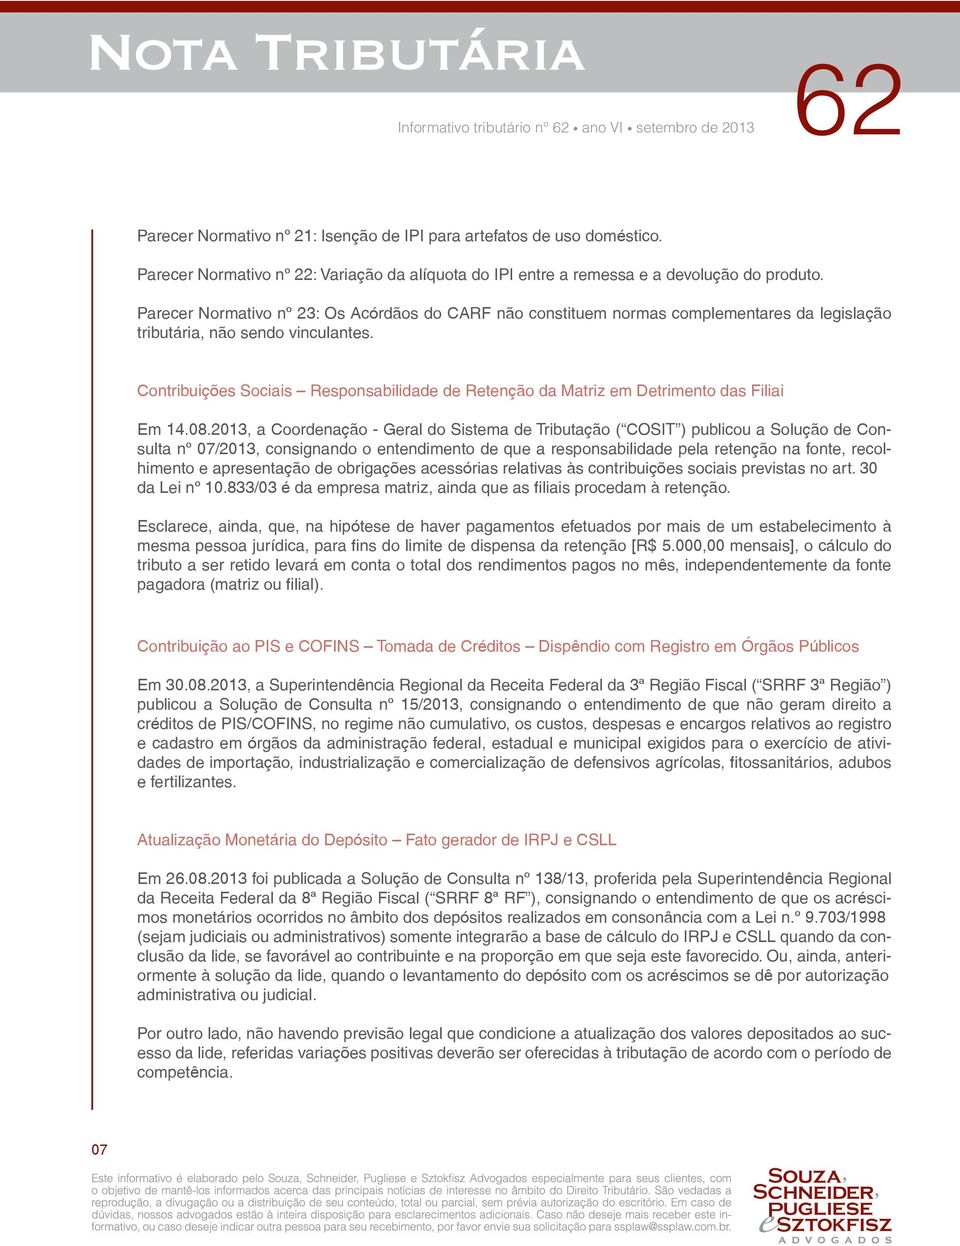 Contribuições Sociais Responsabilidade de Retenção da Matriz em Detrimento das Filiai Em 14.08.